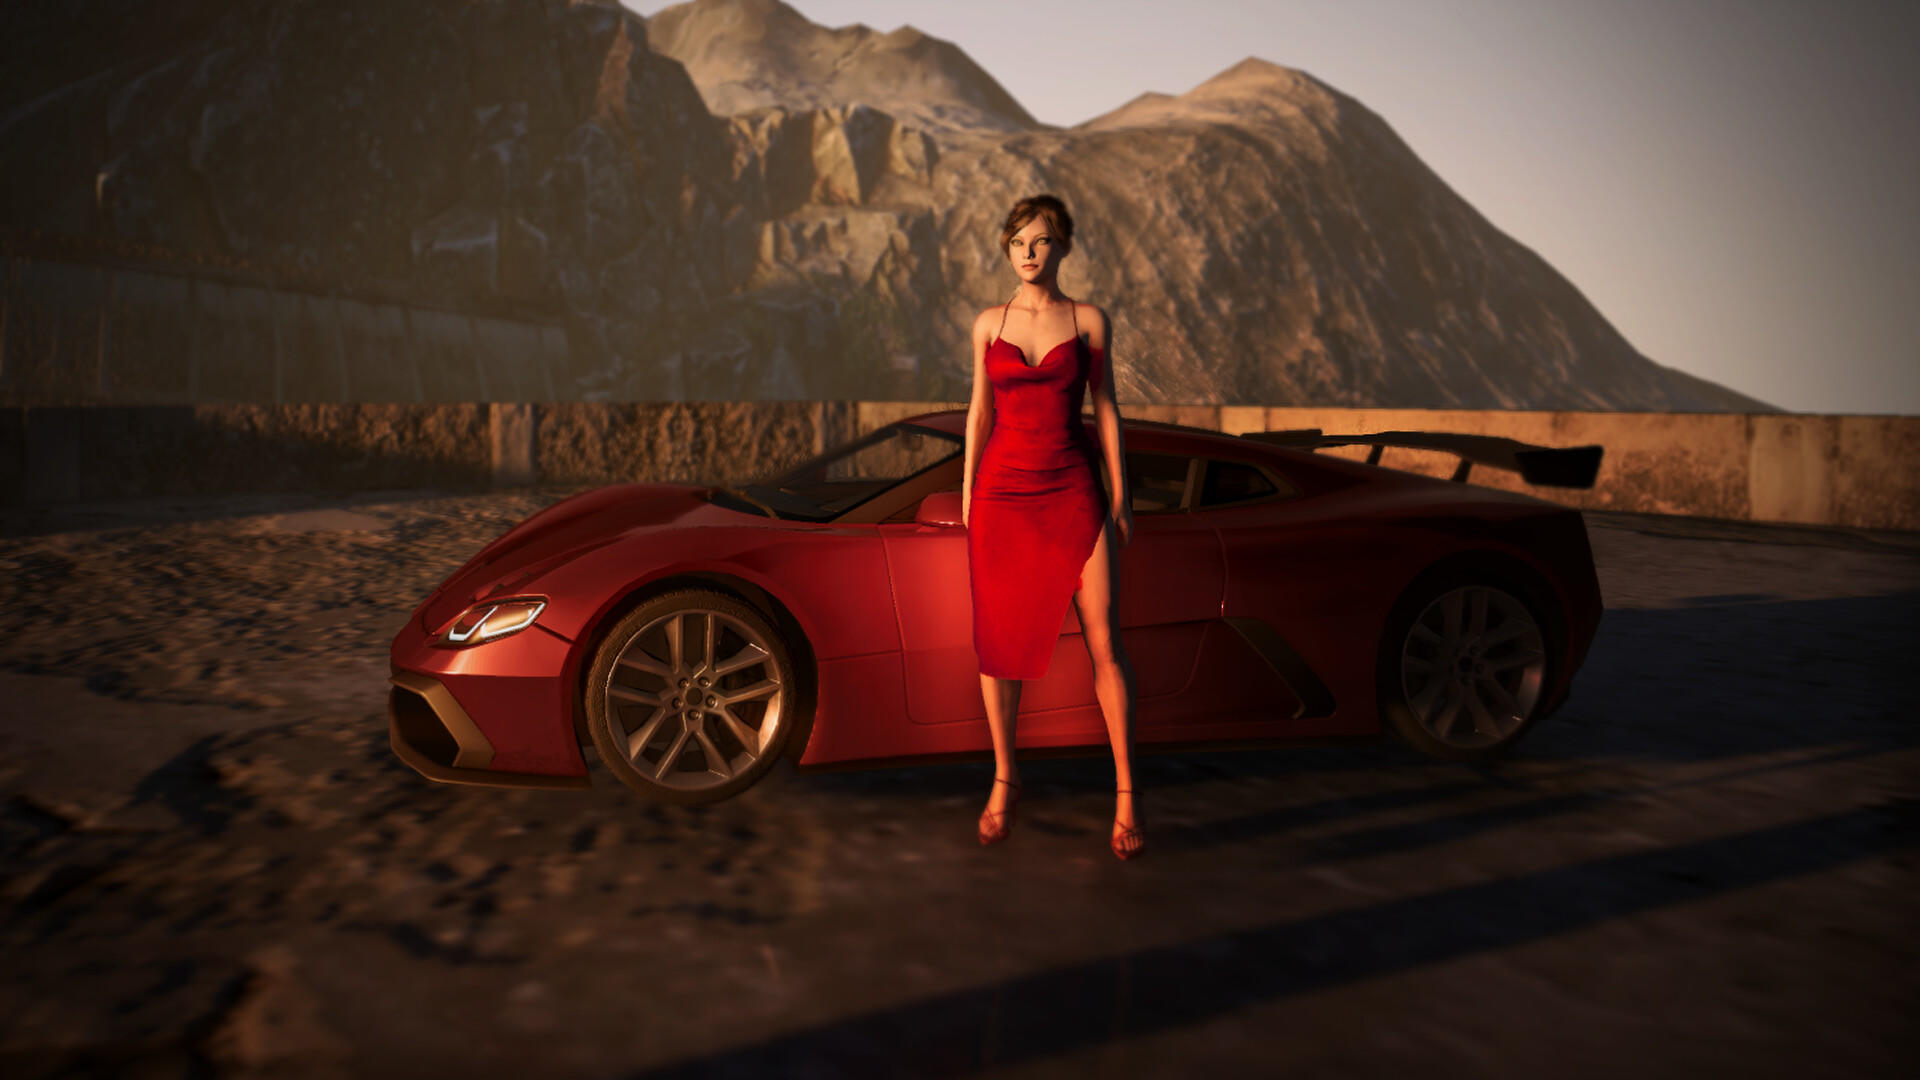 Used Cars Simulator screenshot game